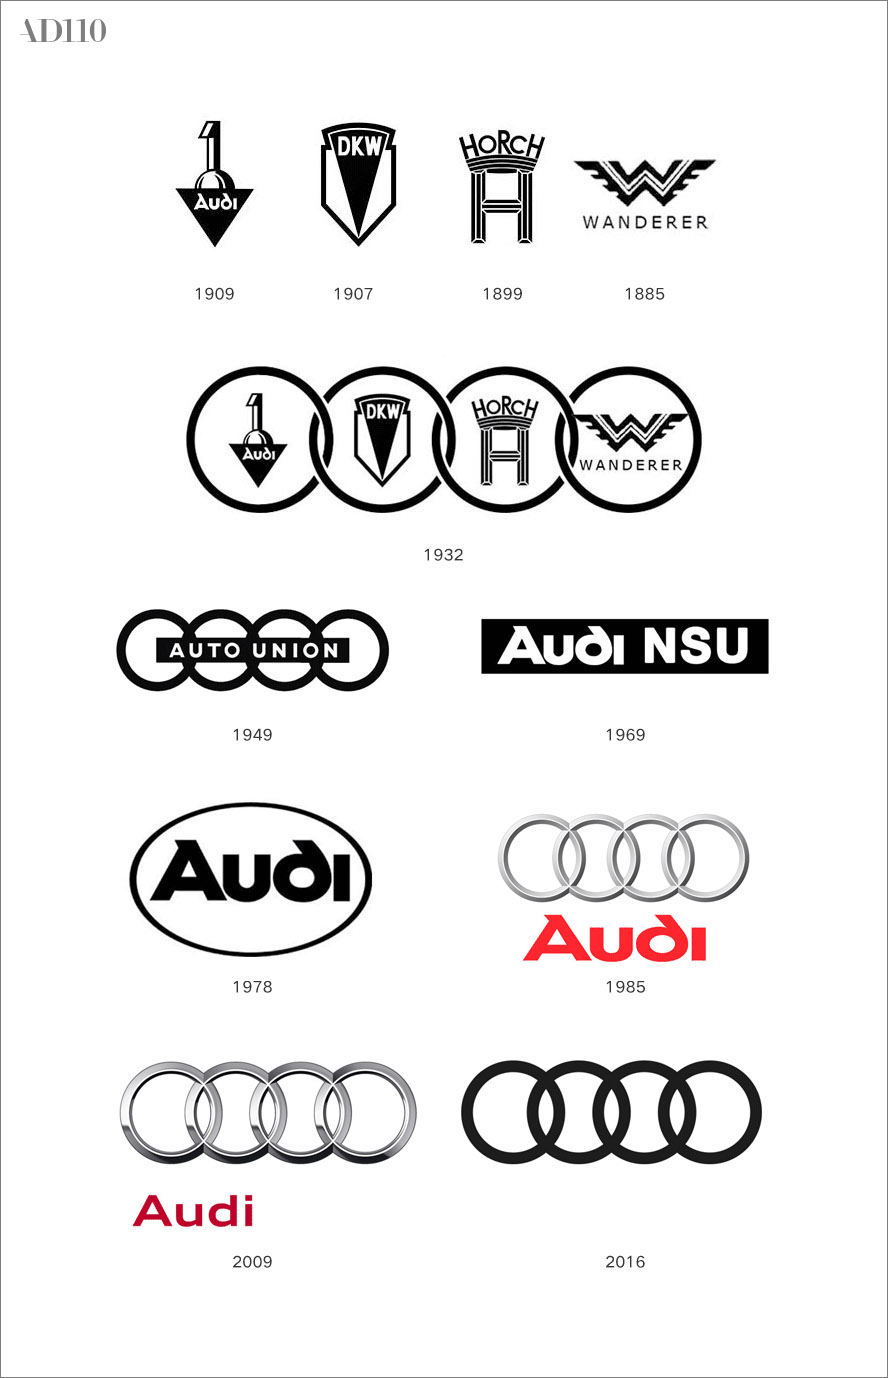 audi(奥迪)汽车把立体品牌标识换成了平面化图形